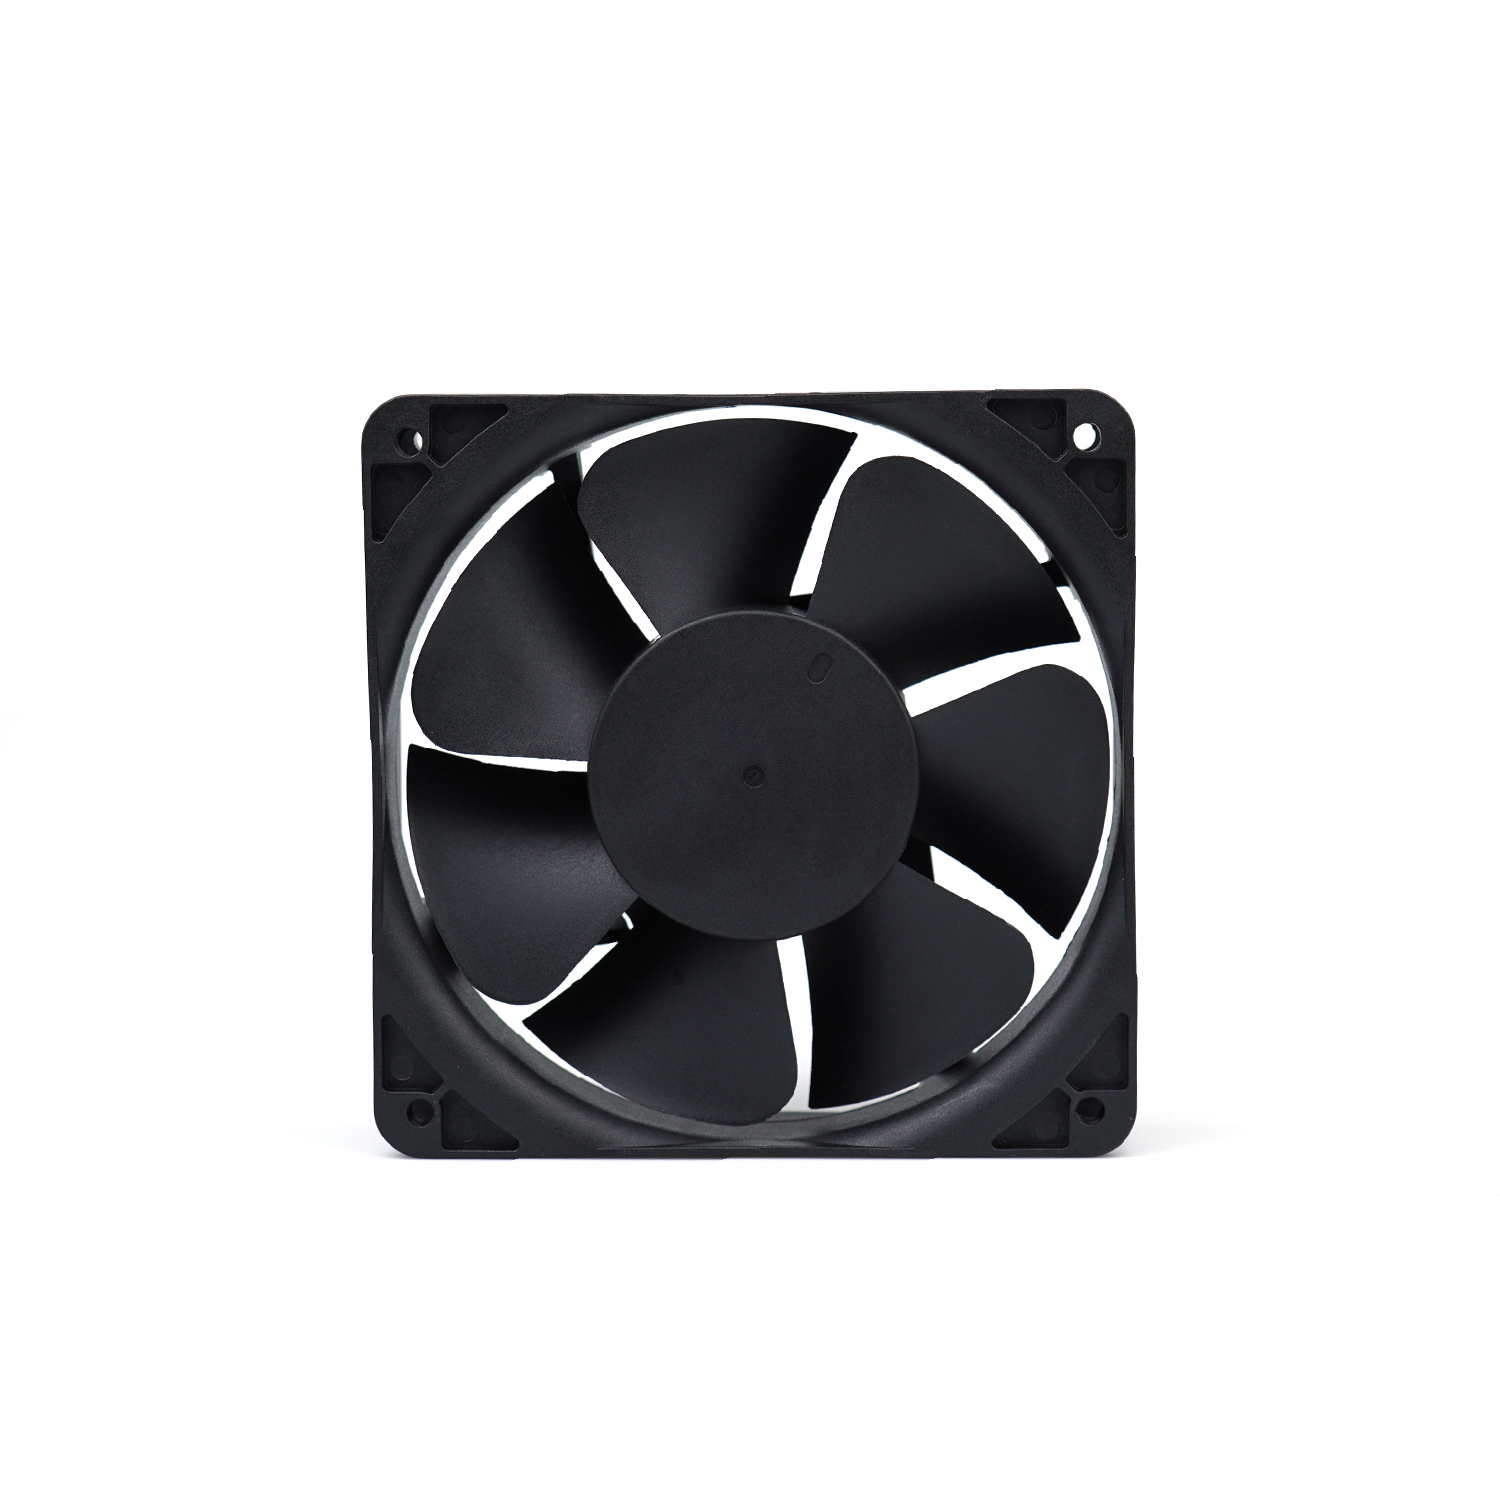 12032 cooling fan 12V dc axial flow fan 120mm